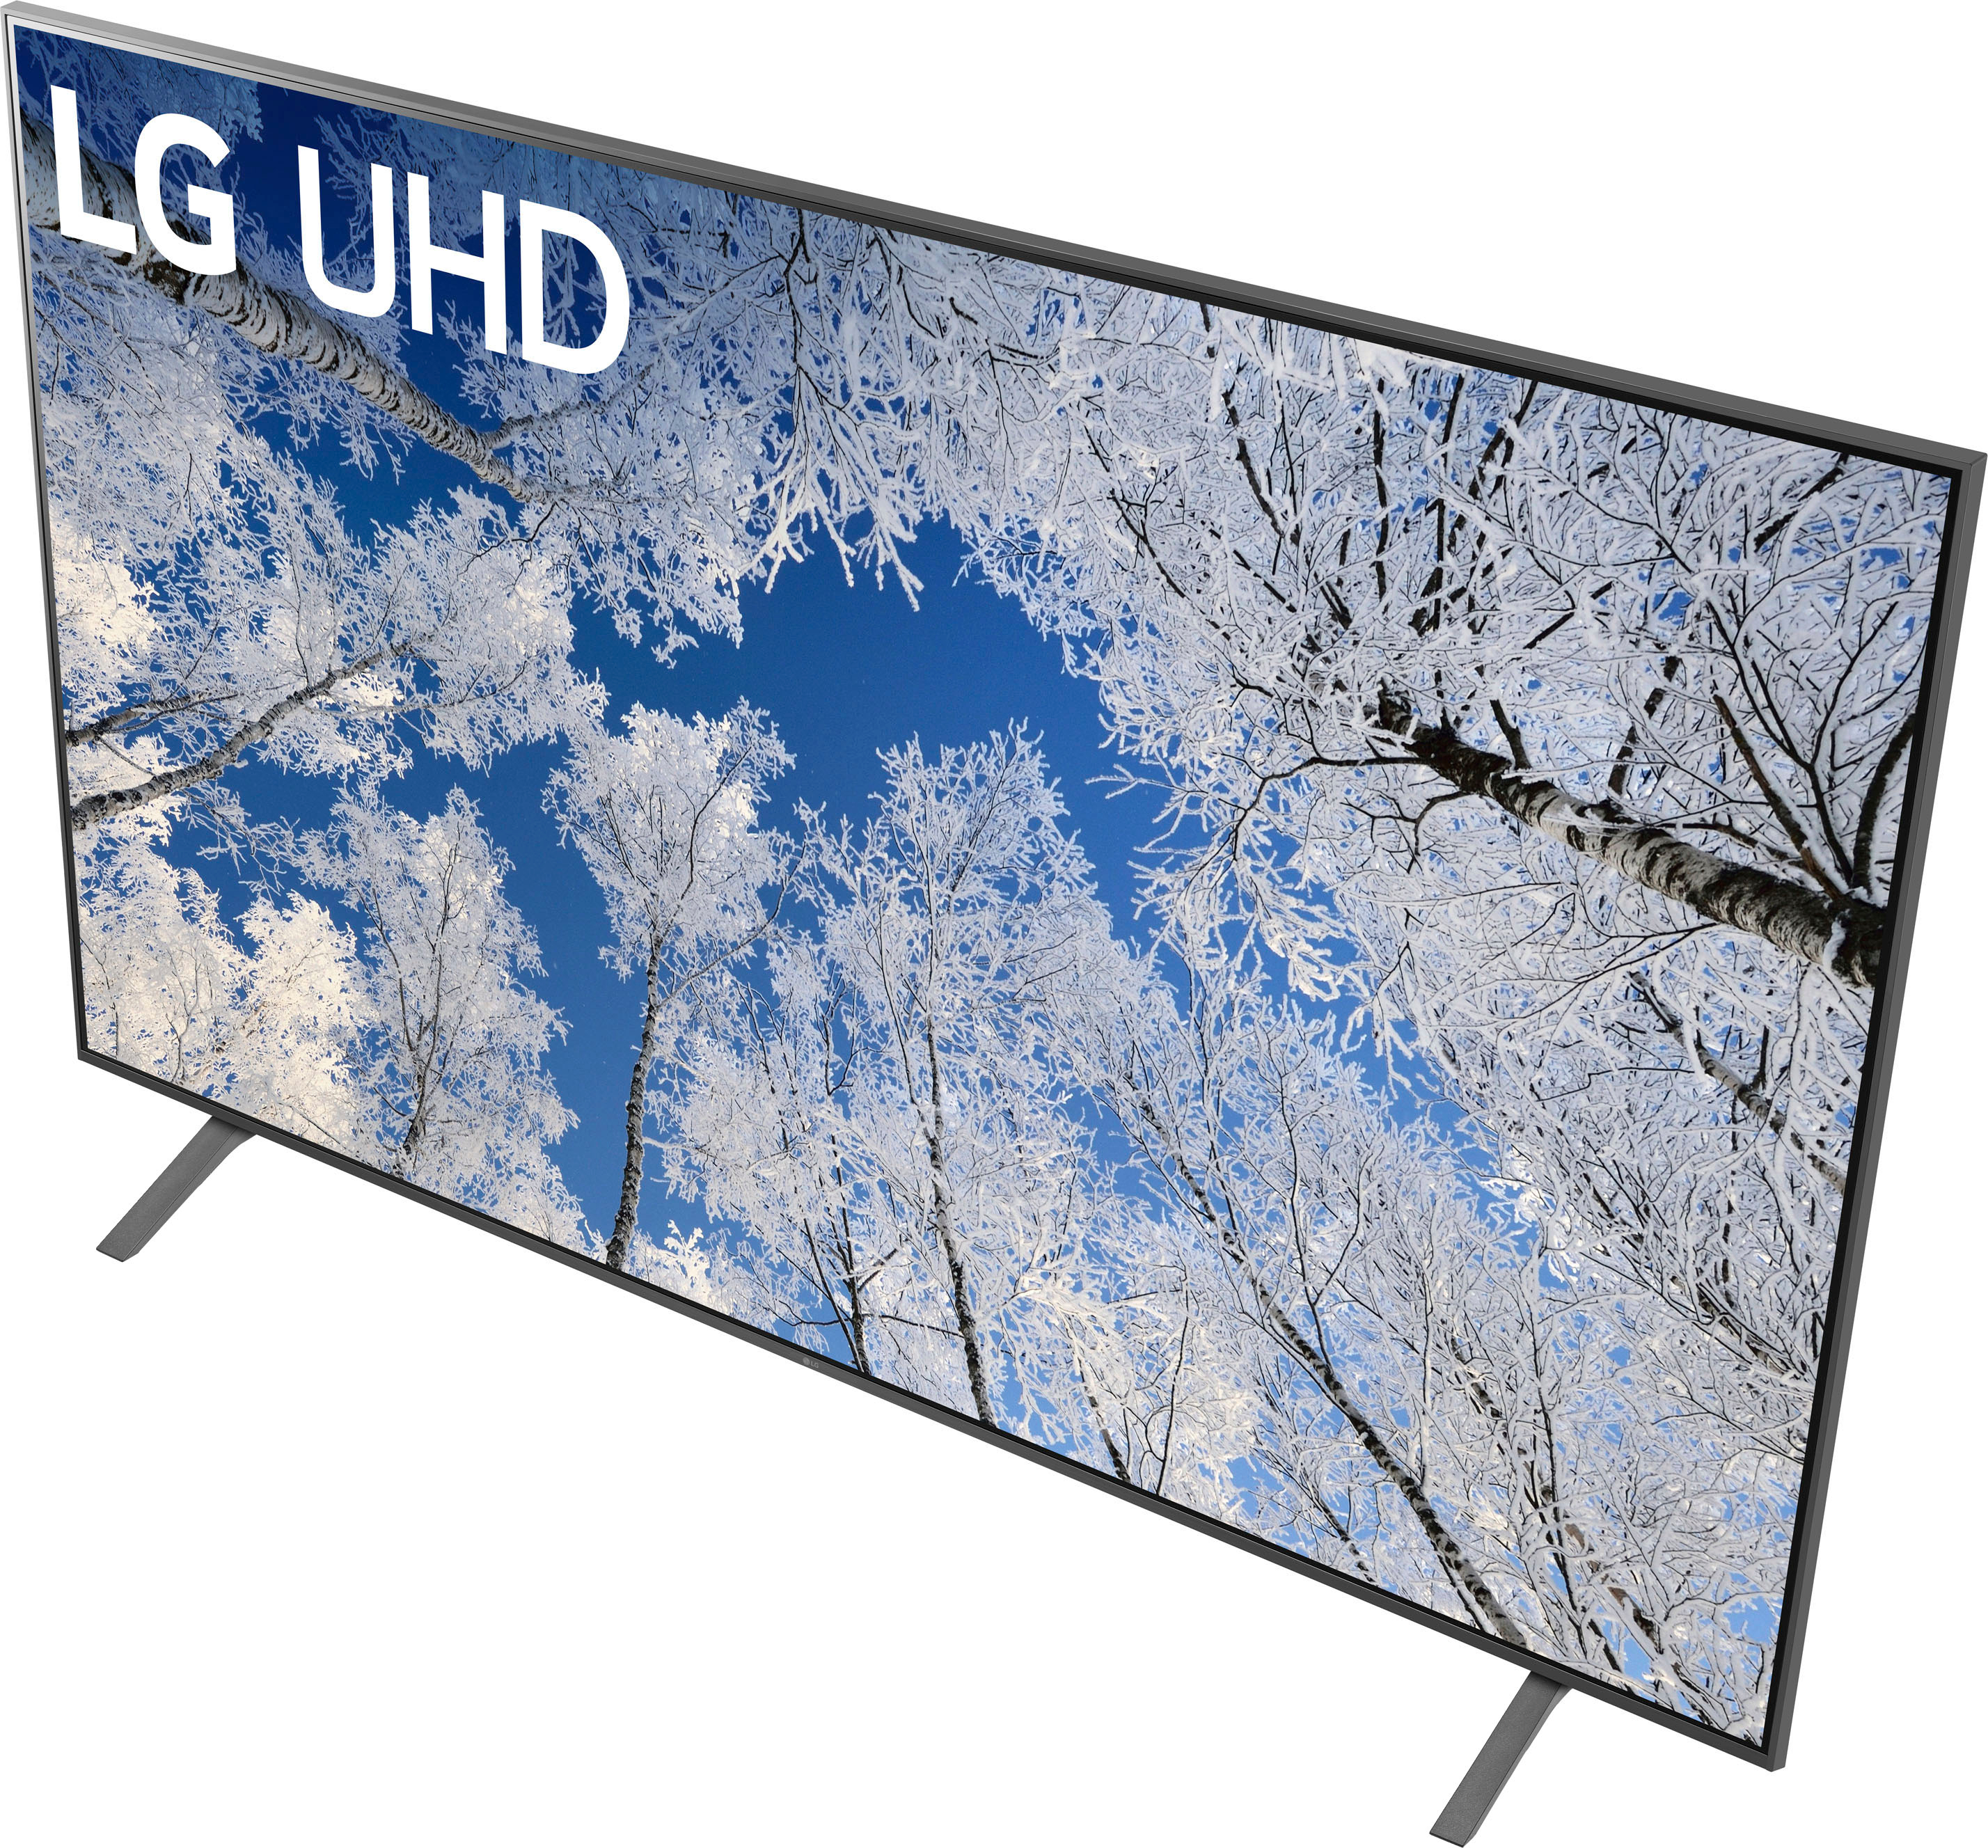 LG TV UHD 75 pouce UK6500 Séries TV LED Smart IPS 4K Ecran 4K HDR